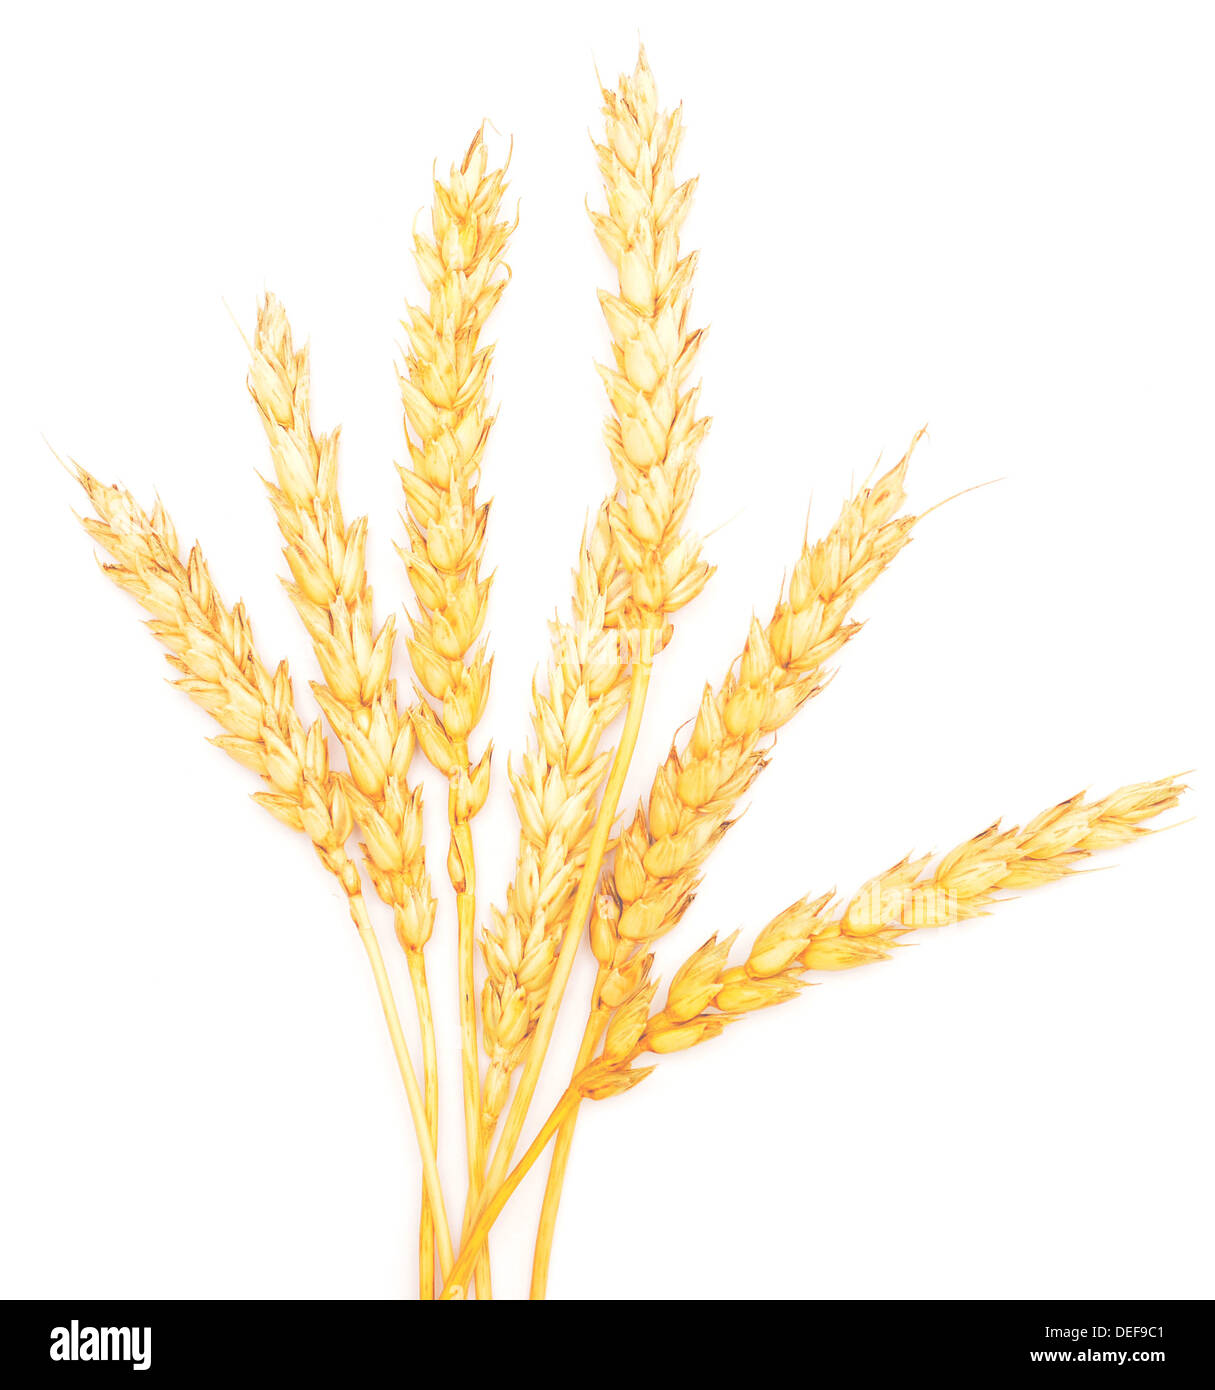 ripe wheat isolated on white background Stock Photo